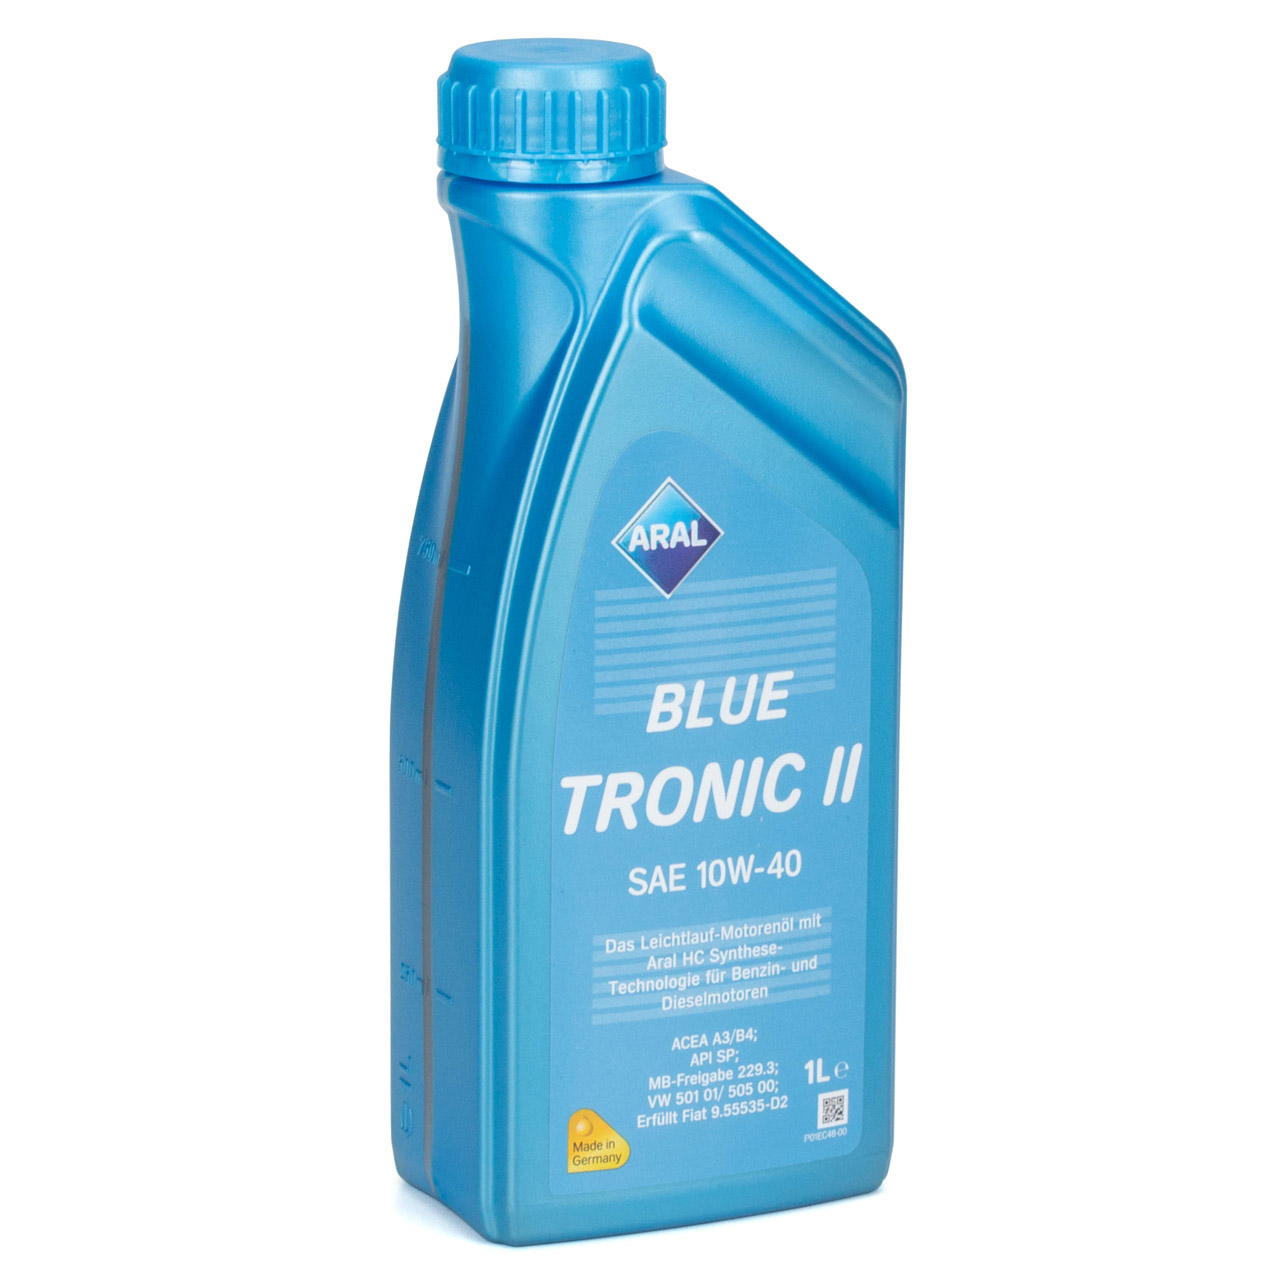 6L 6 Liter ARAL BLUE TRONIC II 10W-40 Motoröl Öl MB 229.3 VW 501.01/505.00 FIAT 9.55535-D2